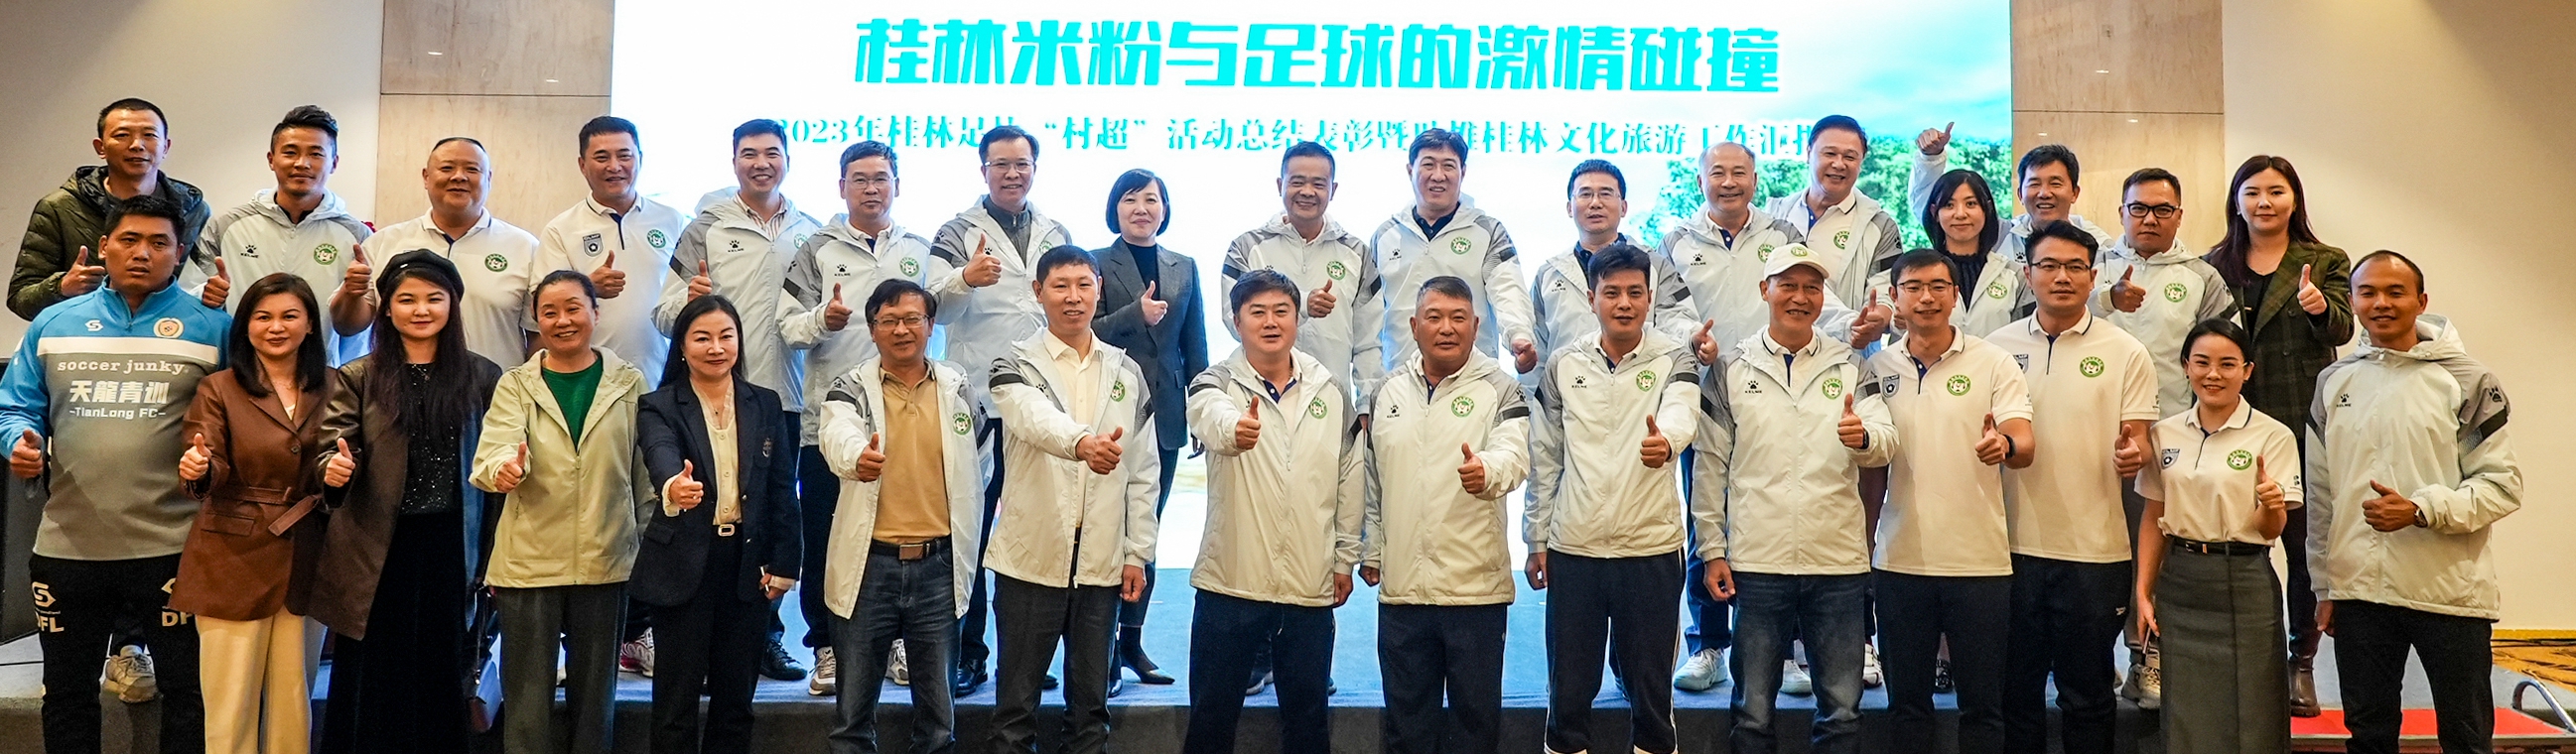 桂林将成立“桂林米粉足球俱乐部”，征战全国各级联赛